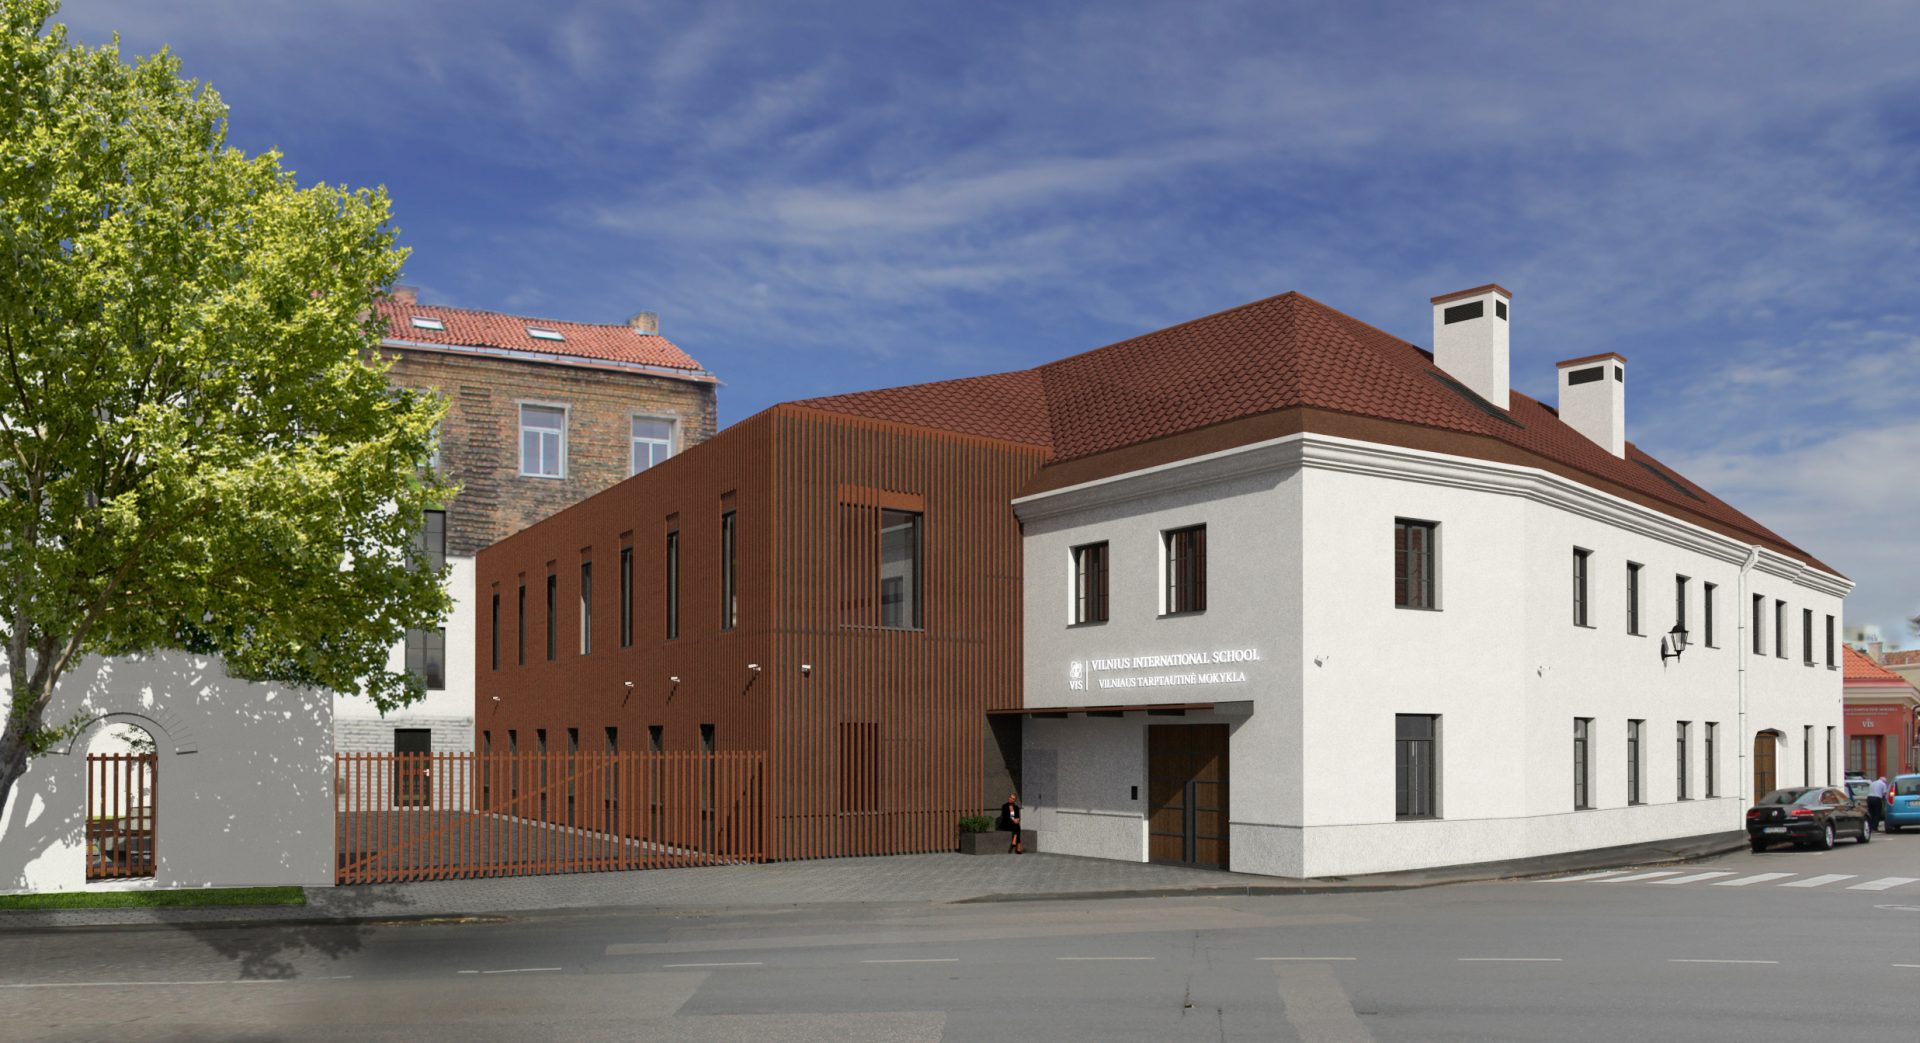 Statybos įmonė “Naresta” pradeda mokslo paskirties pastato Rusų g. 5, Vilniuje rekonstrukcijos darbus